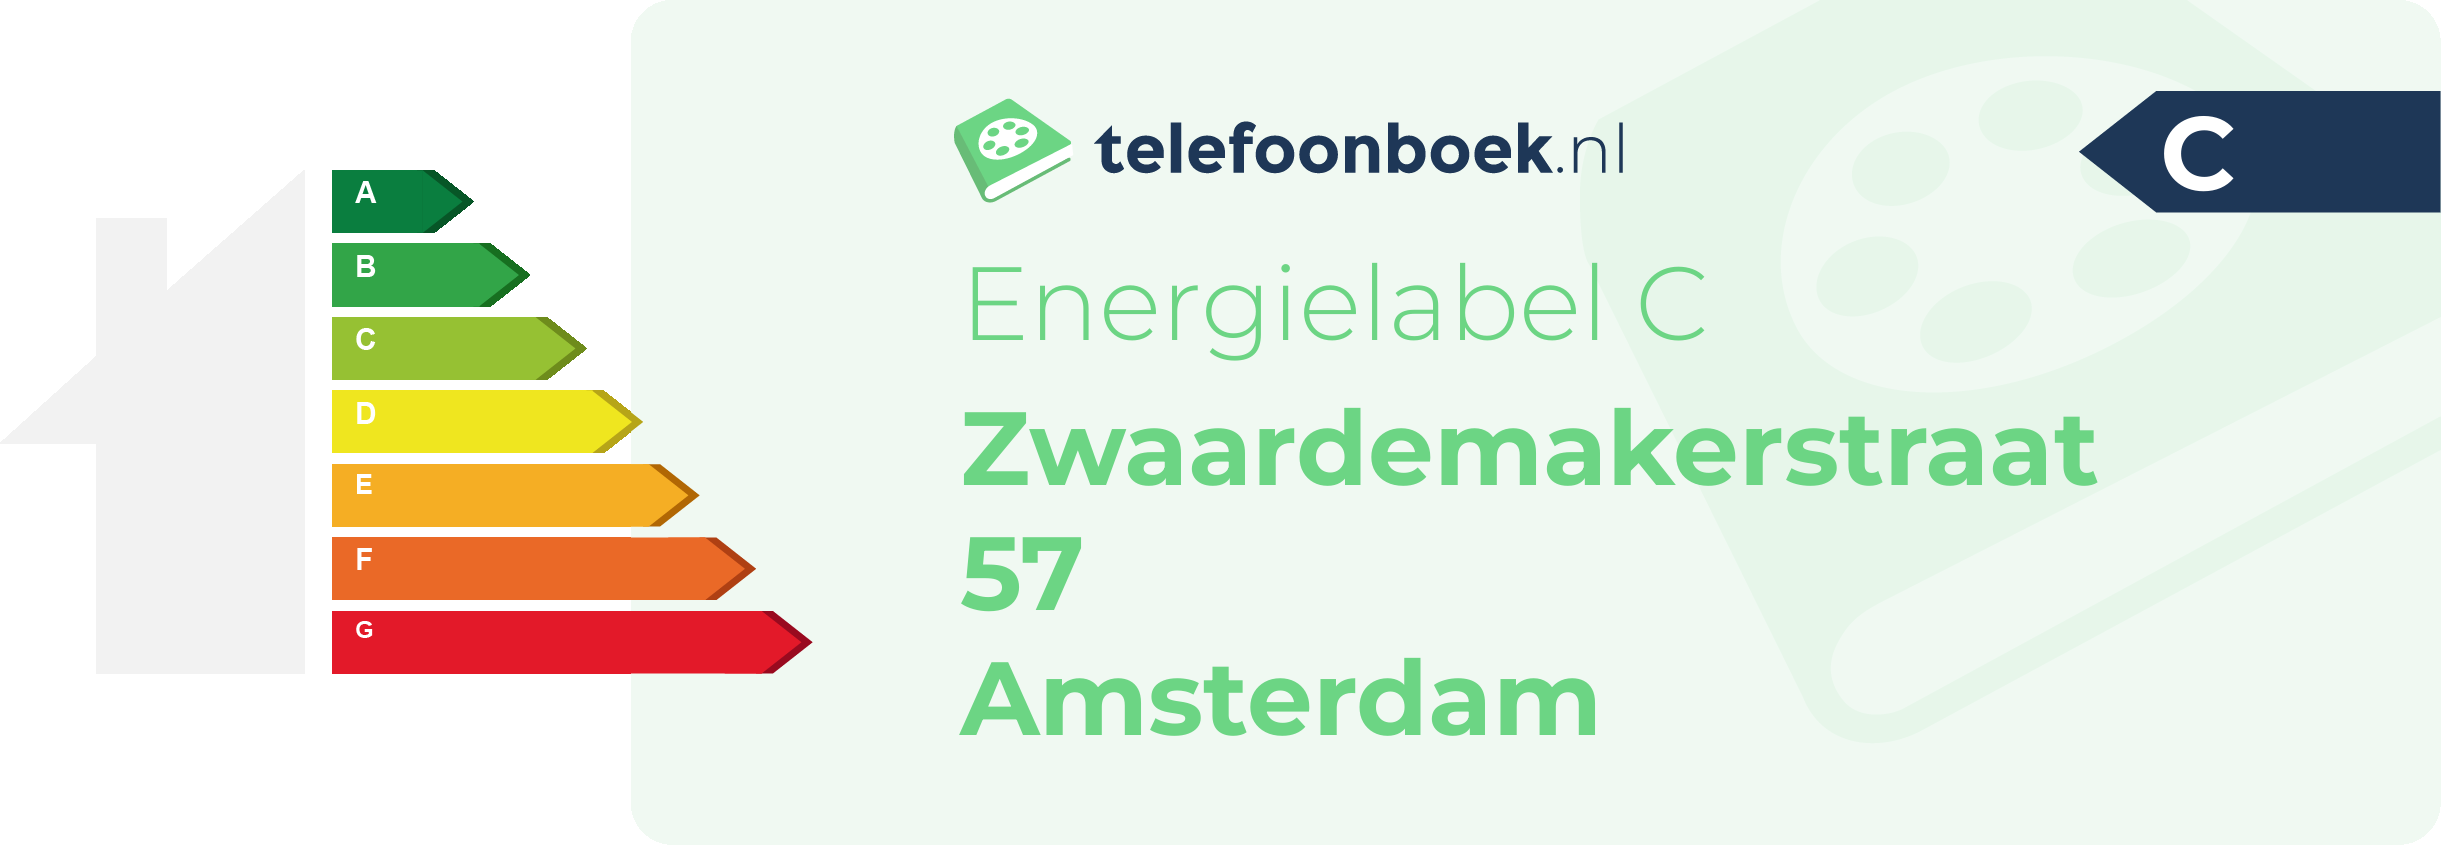 Energielabel Zwaardemakerstraat 57 Amsterdam